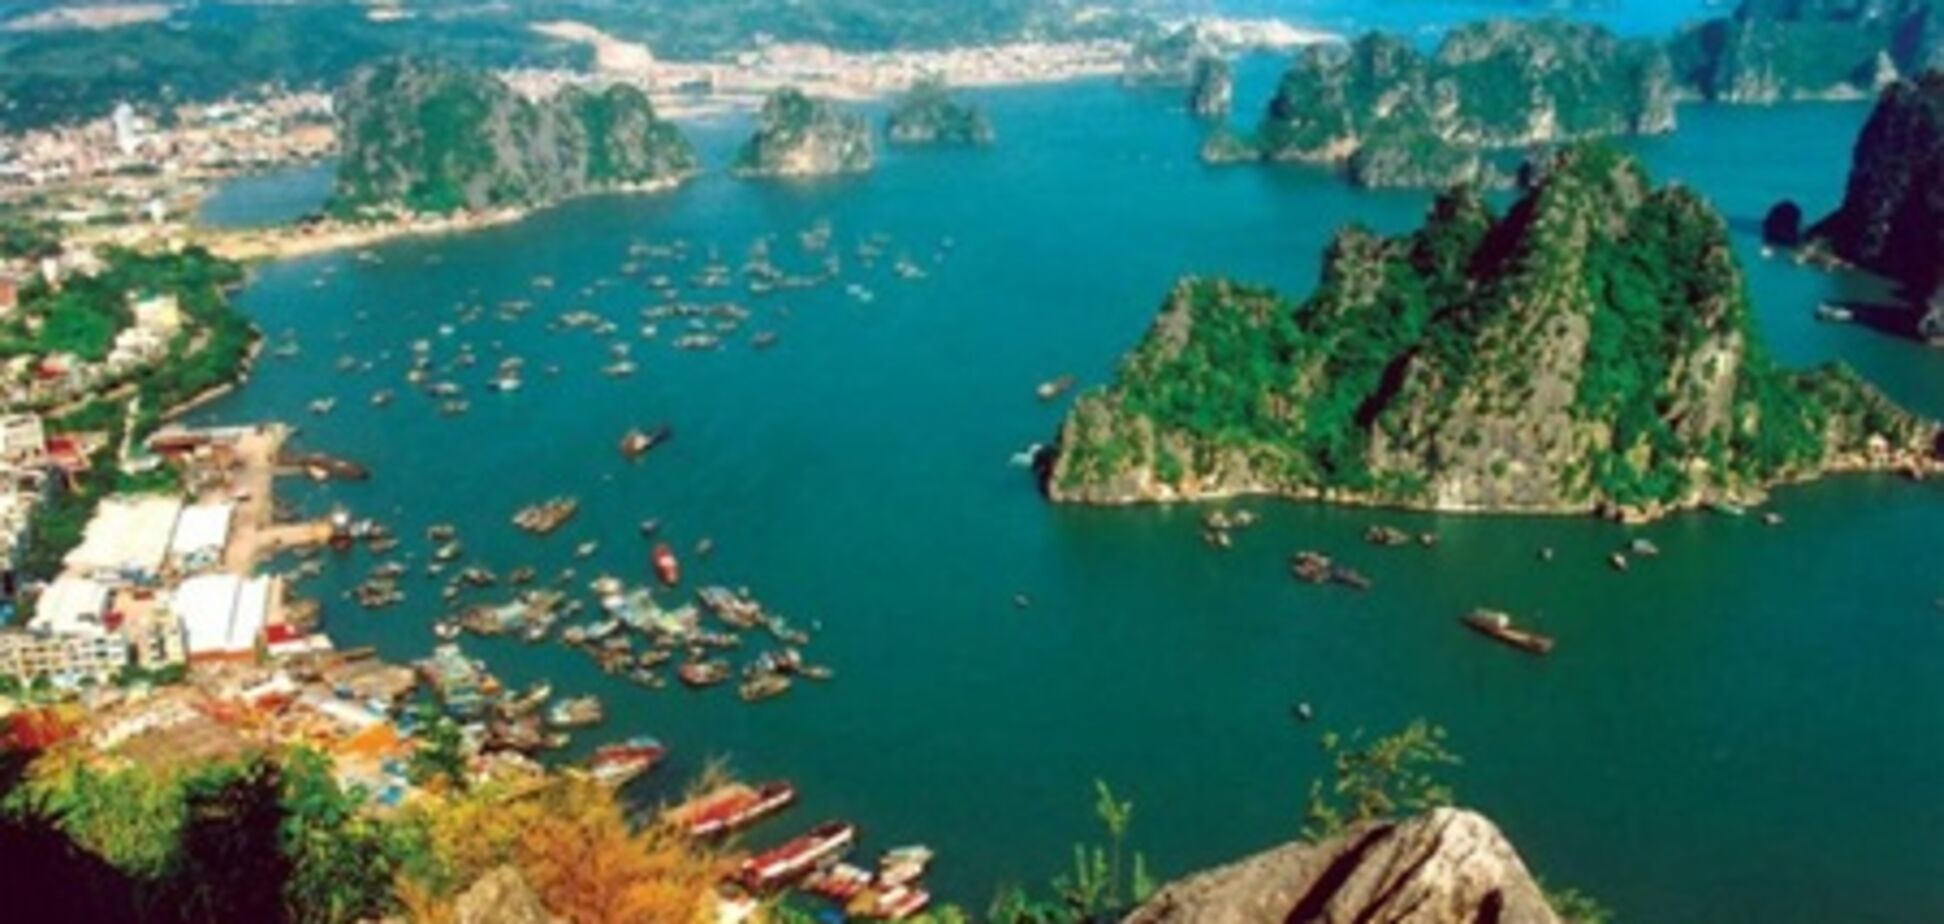 Вьетнам принял новый туристический план